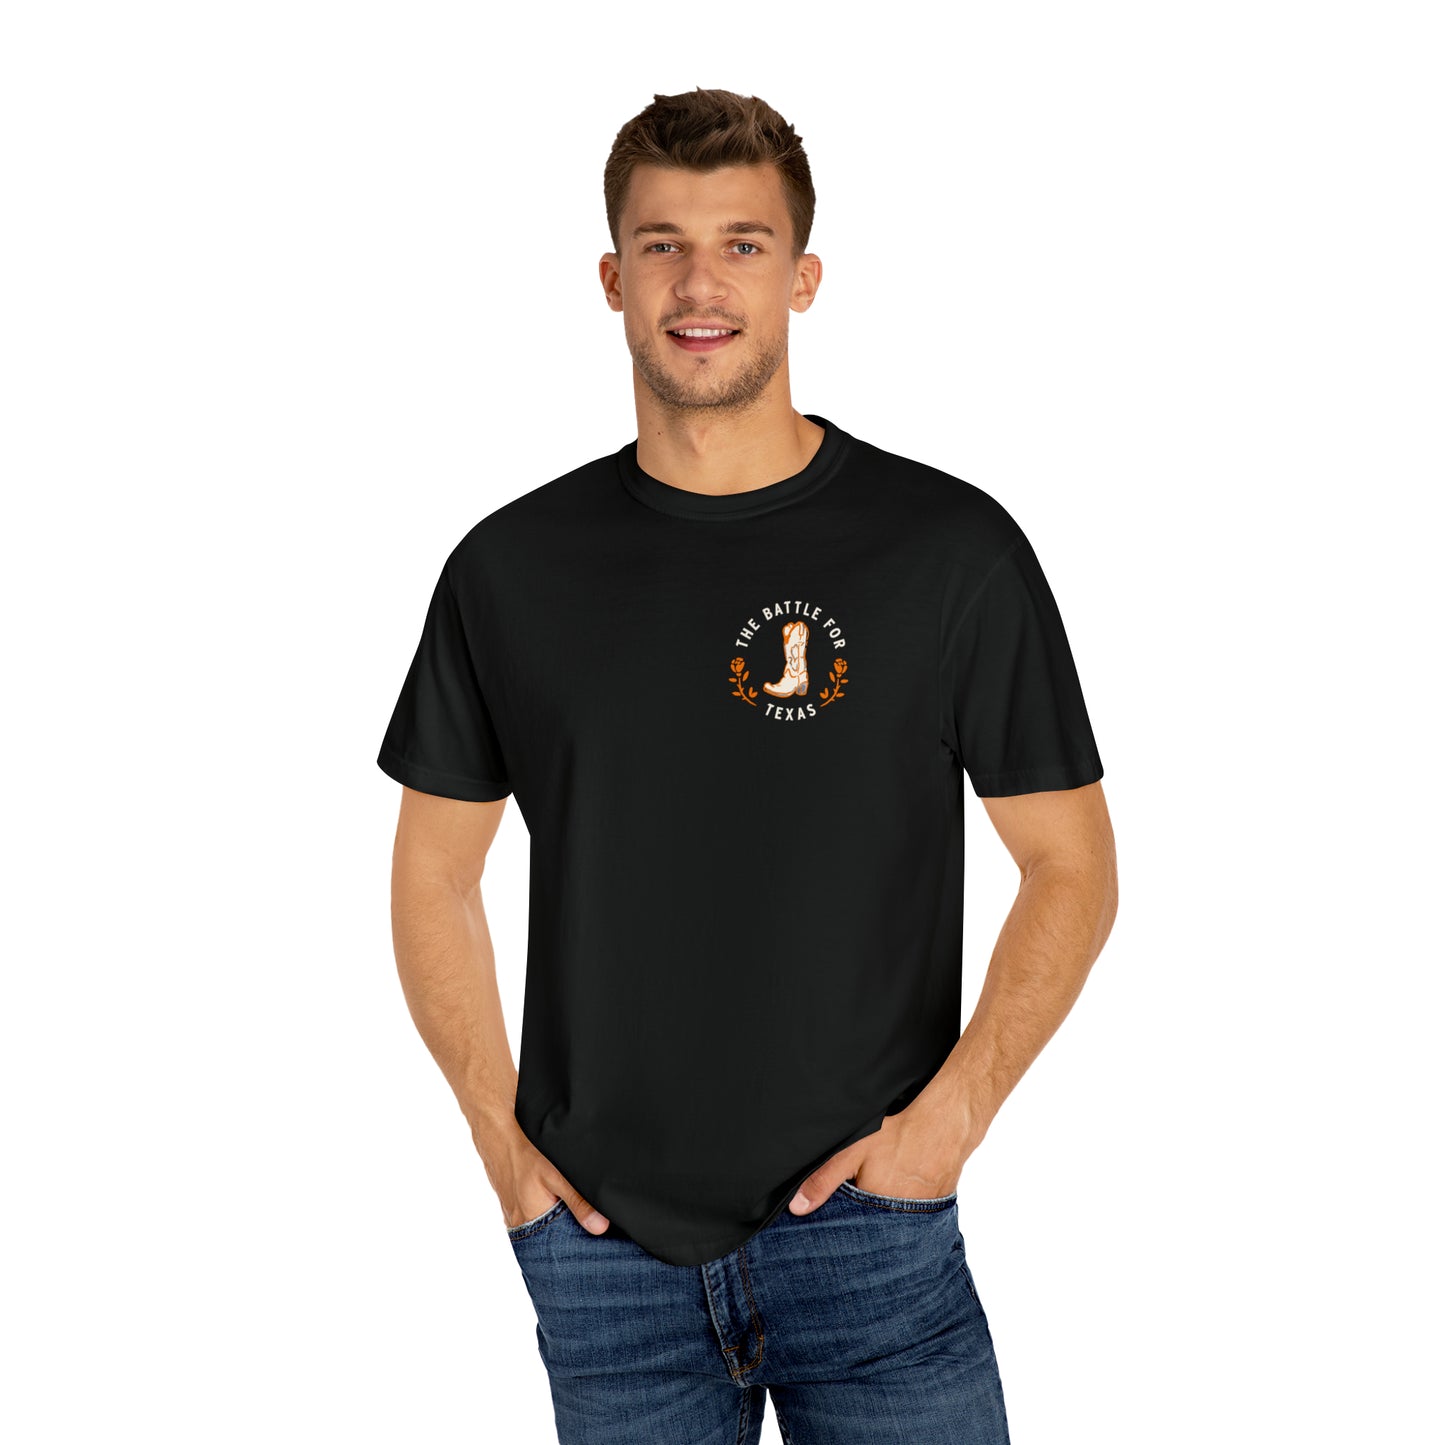 Battle For Texas Baseball Premium Unisex Garment-Dyed T-shirt